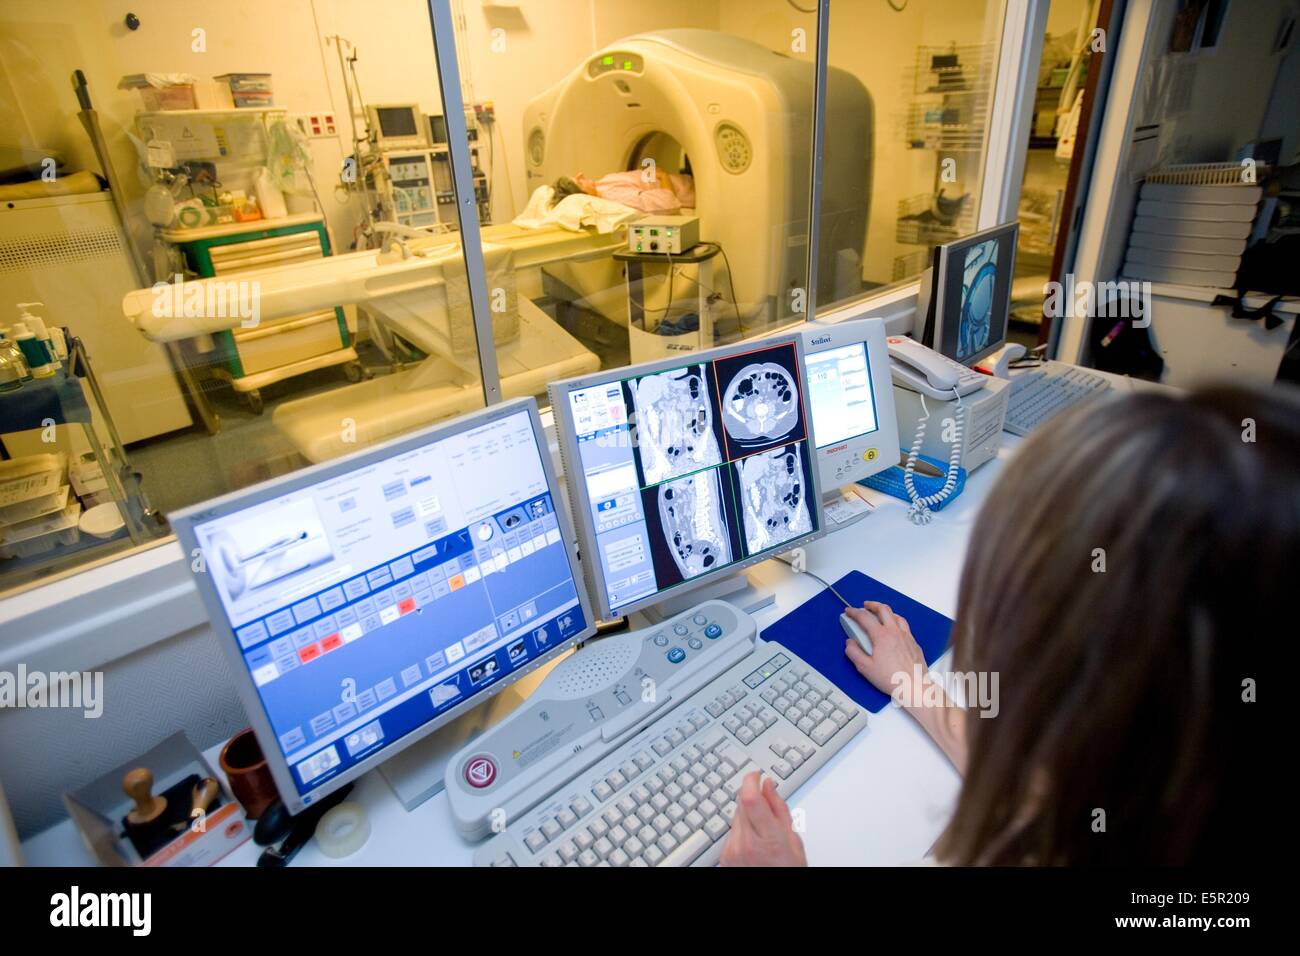 Ministère de l'imagerie médicale, hôpital de l'université de Rennes, France, patient en cours d'un colonoscop virtuel, le virtuel Banque D'Images